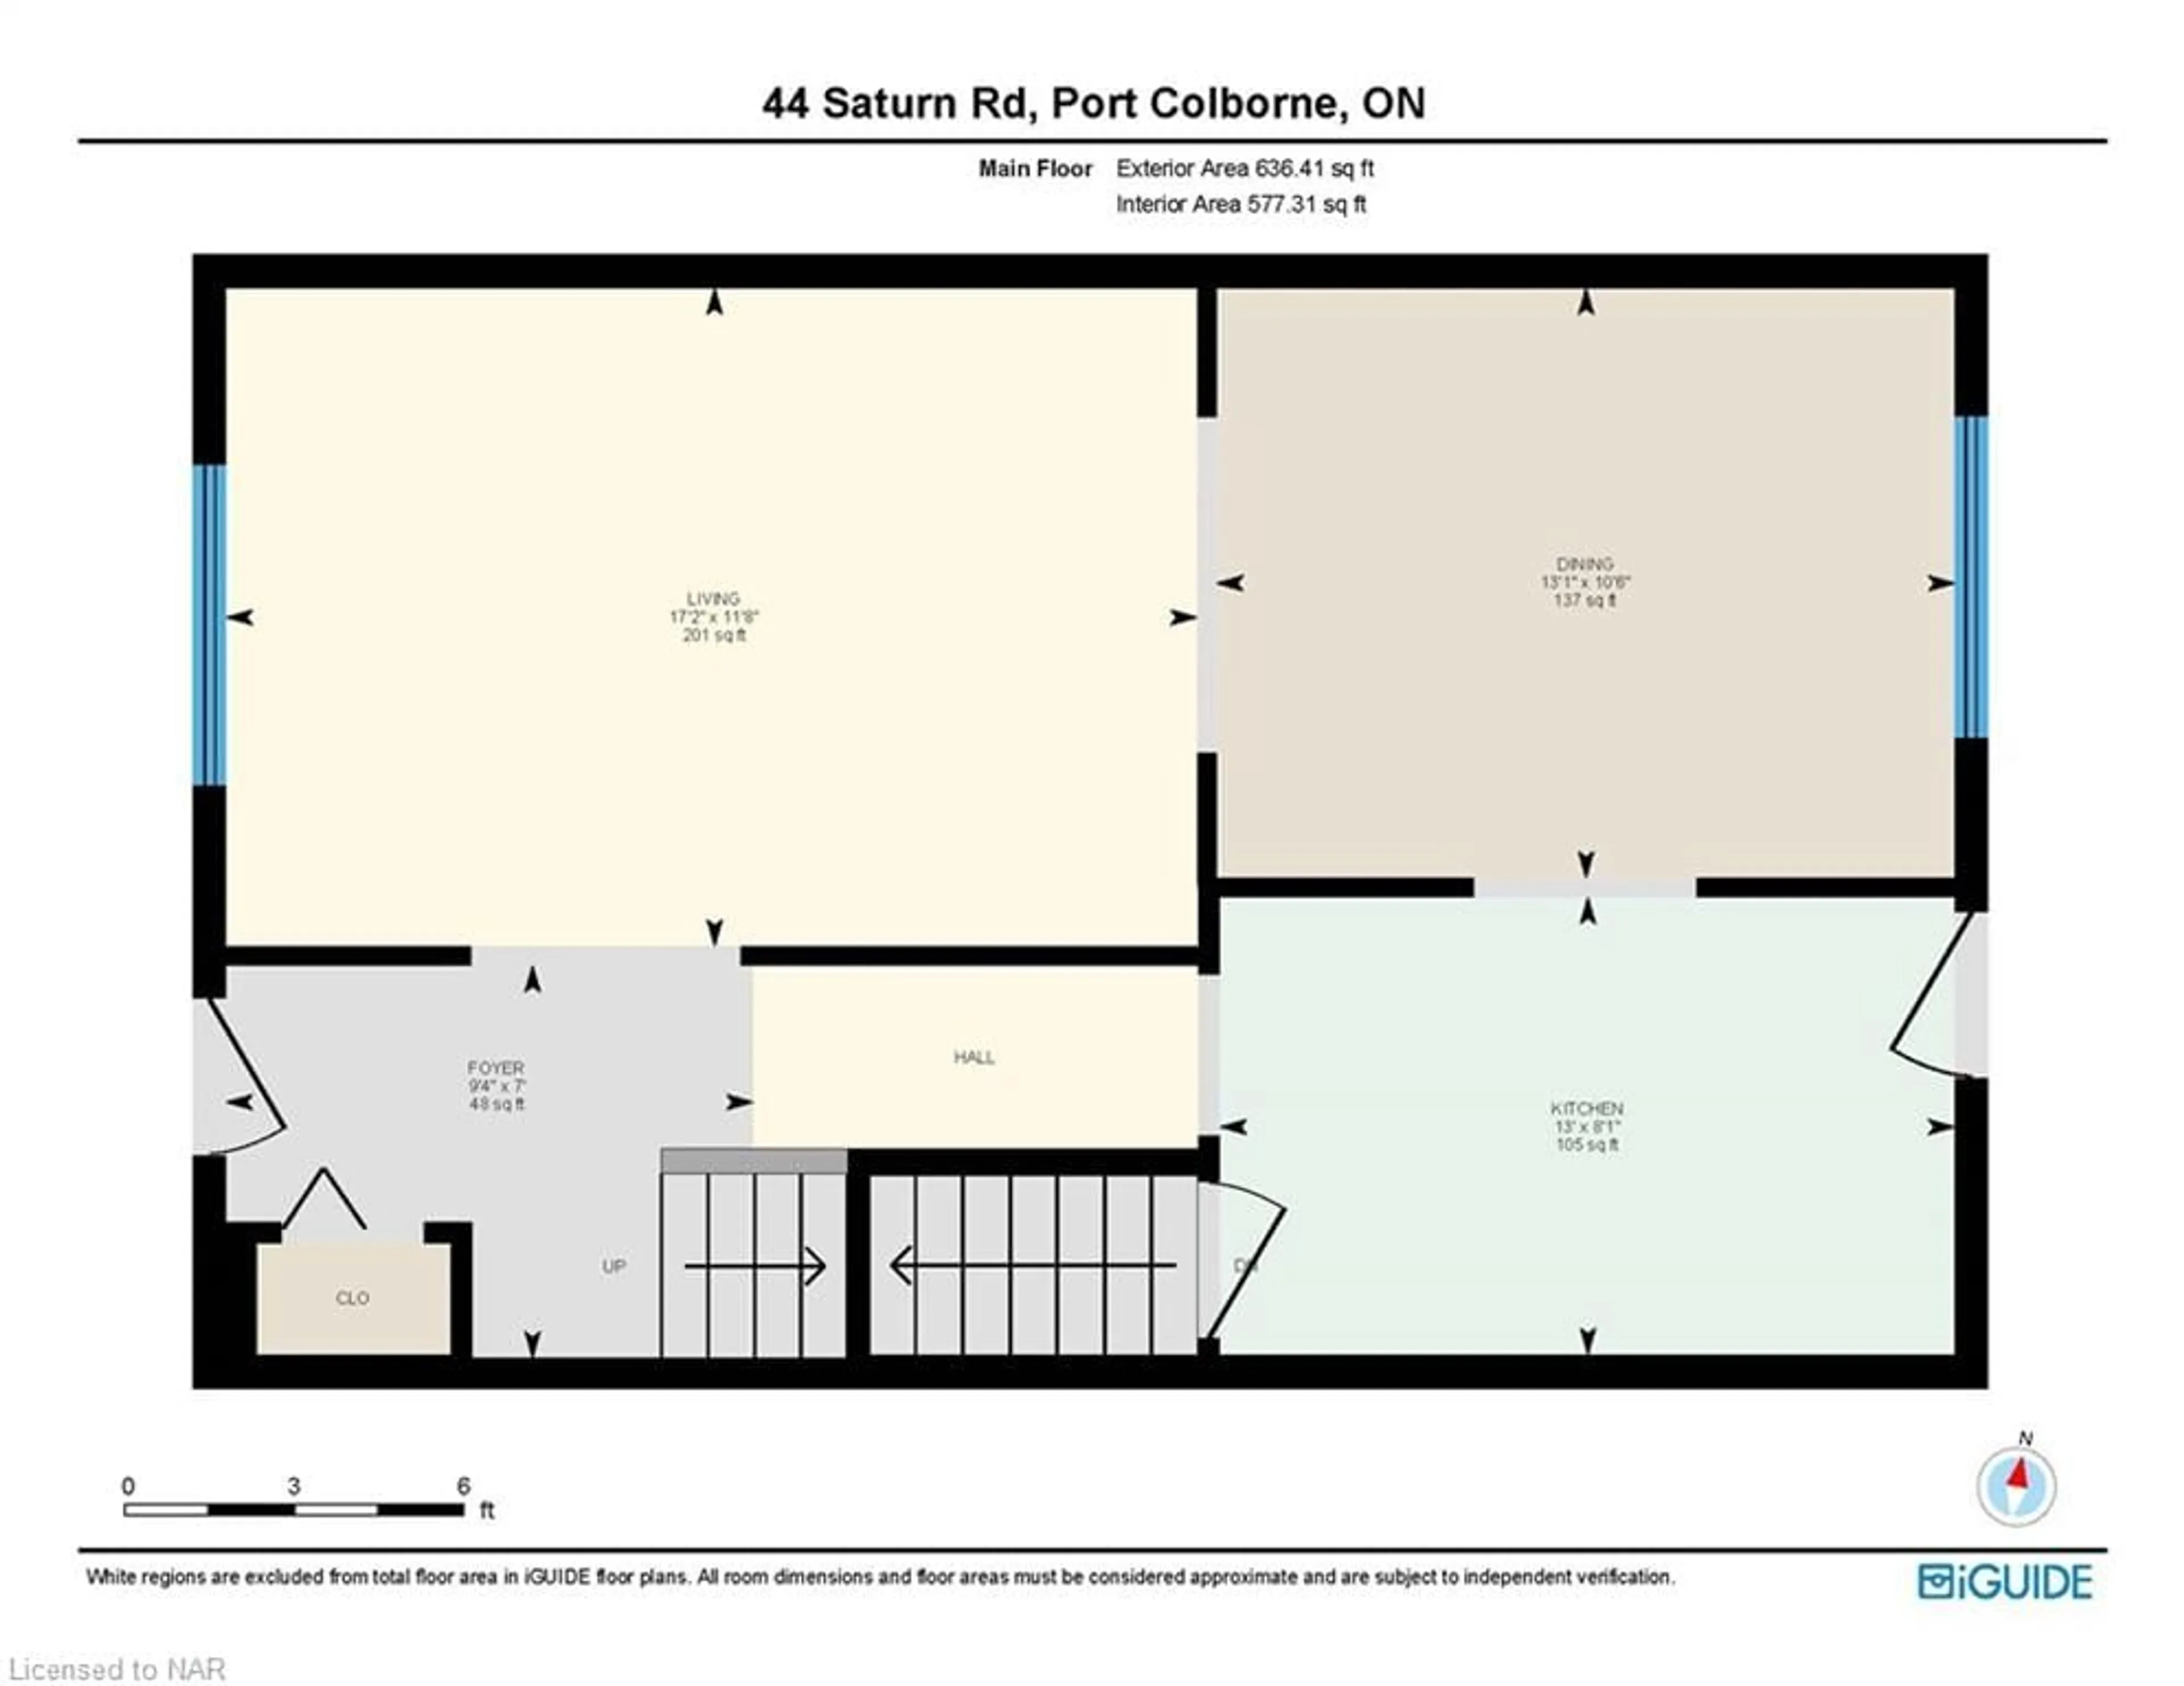 Floor plan for 44 Saturn Rd, Port Colborne Ontario L3K 6E1